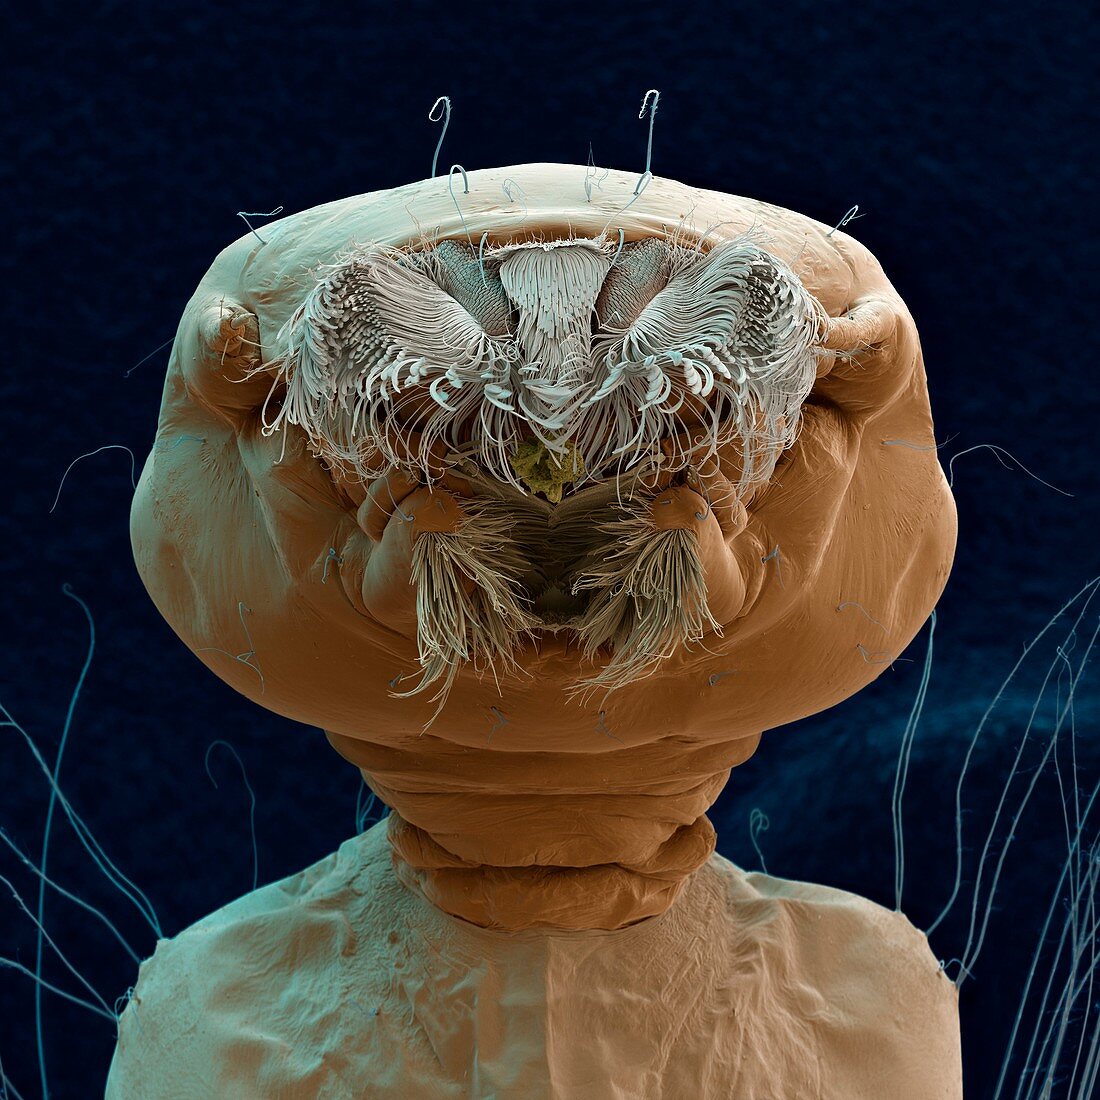 Aedes aegypti mosquito larva, SEM